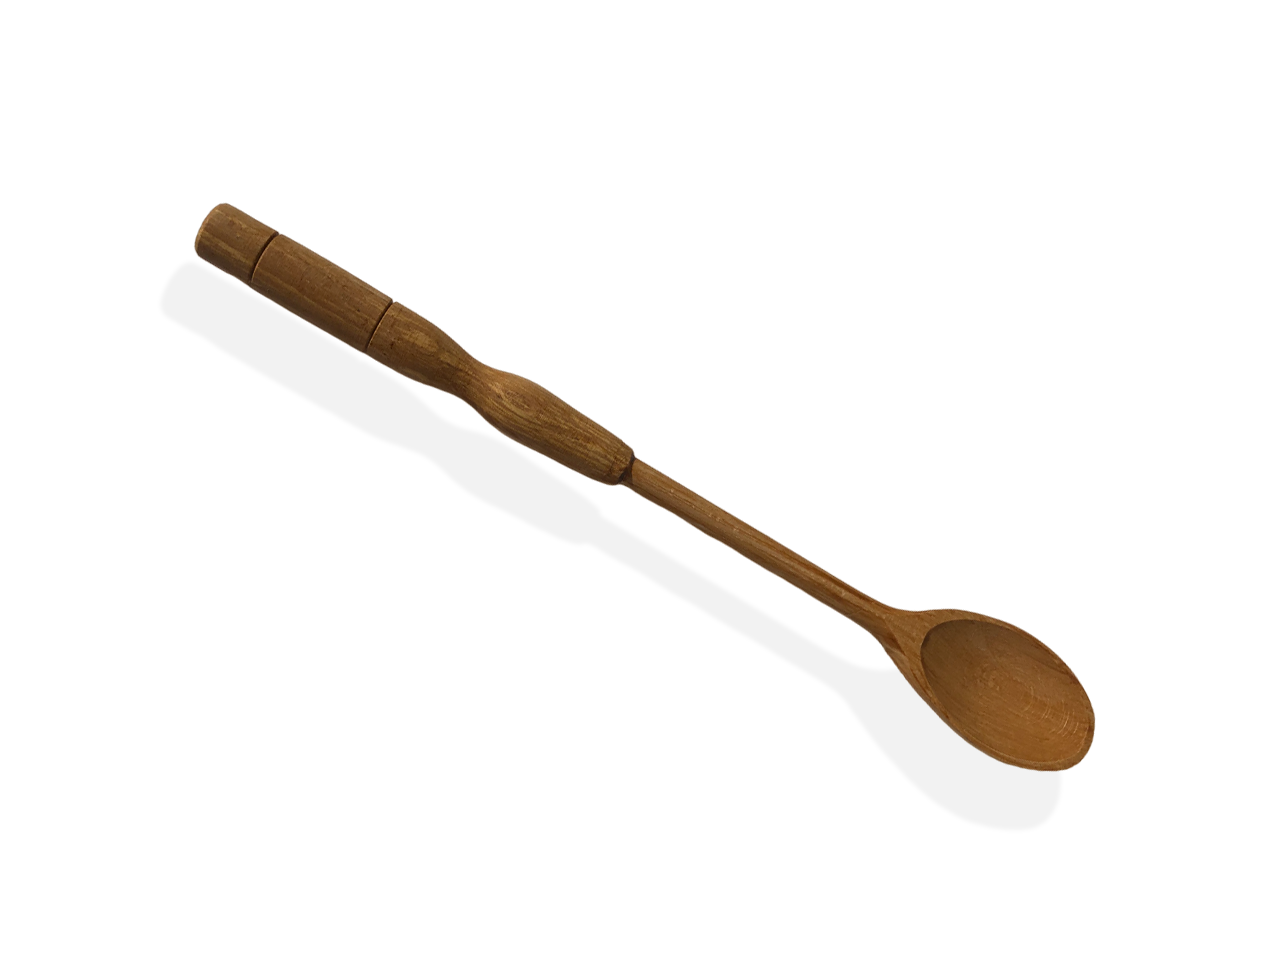 Cucchiaio da cucina in legno.